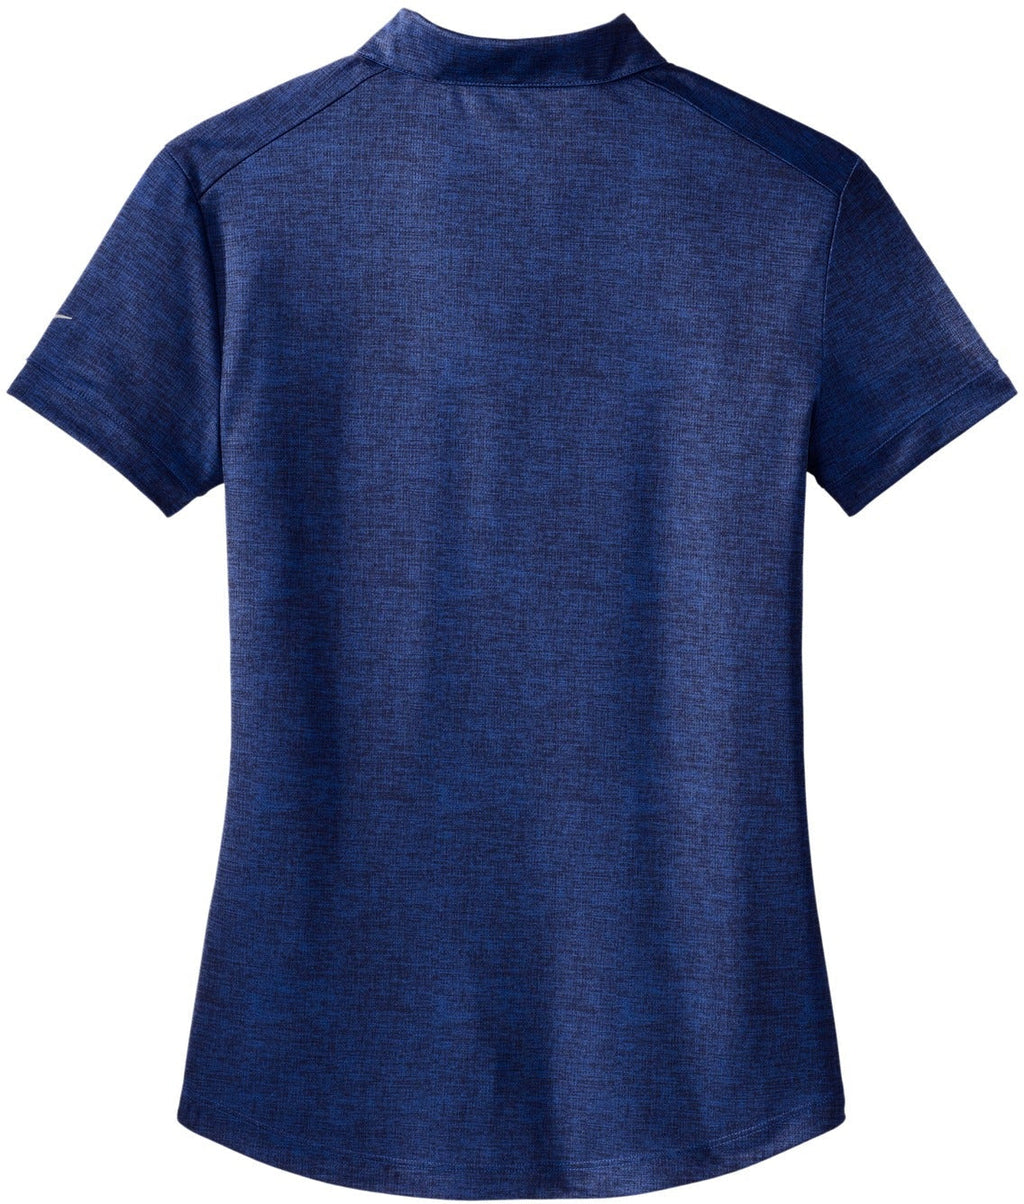 Women's Dri-Fit Nike 838961 Crosshatch Polo Shirt